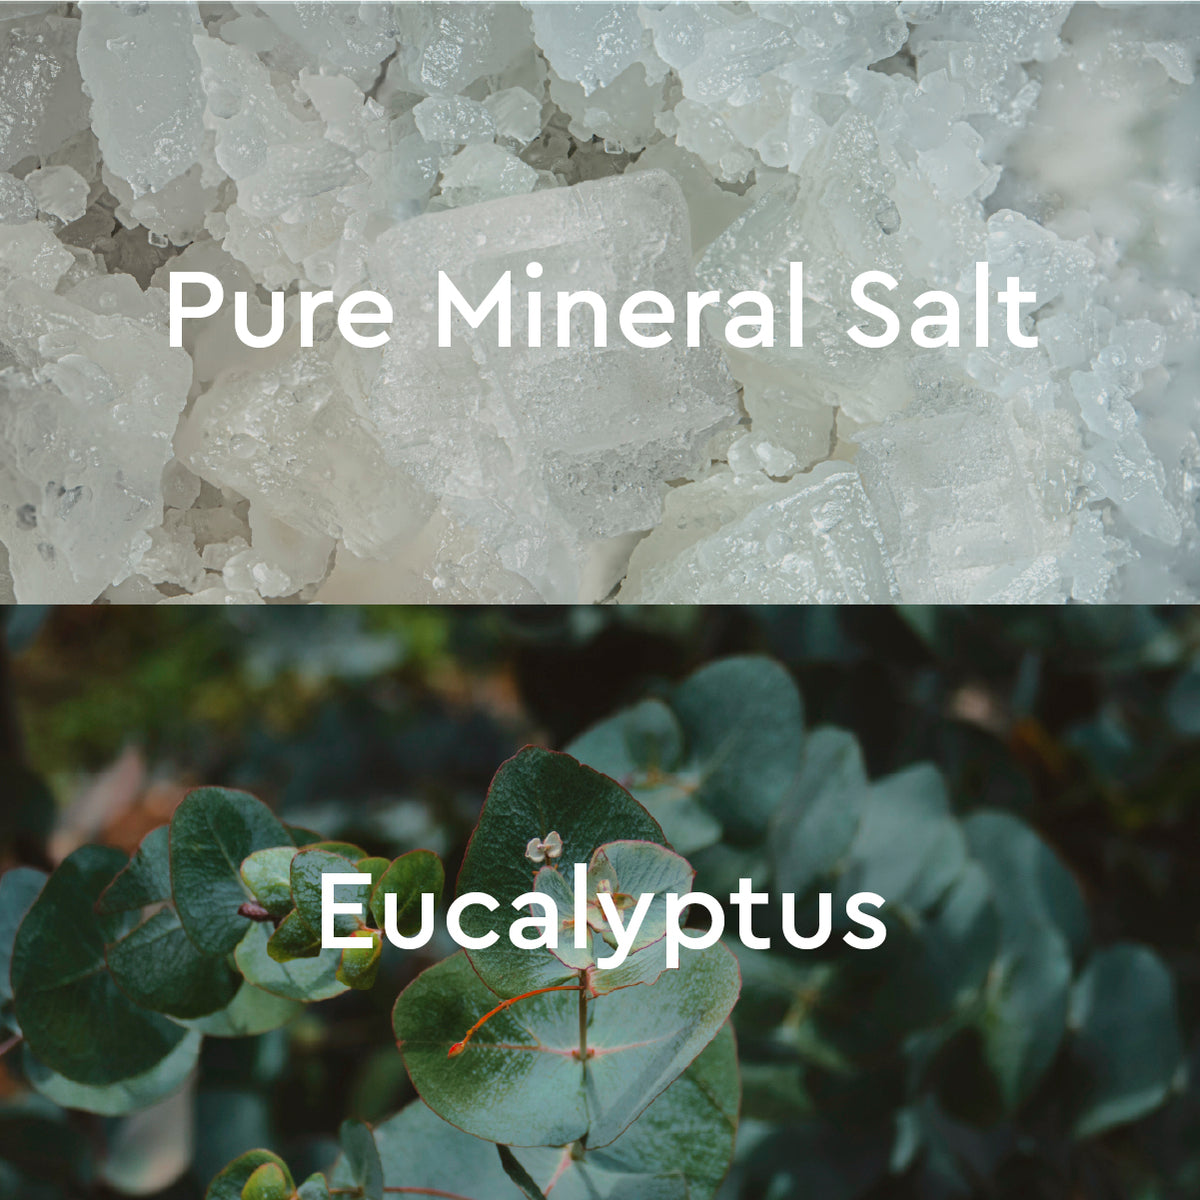 Kneipp Eucalyptus Mineral Bath Salt